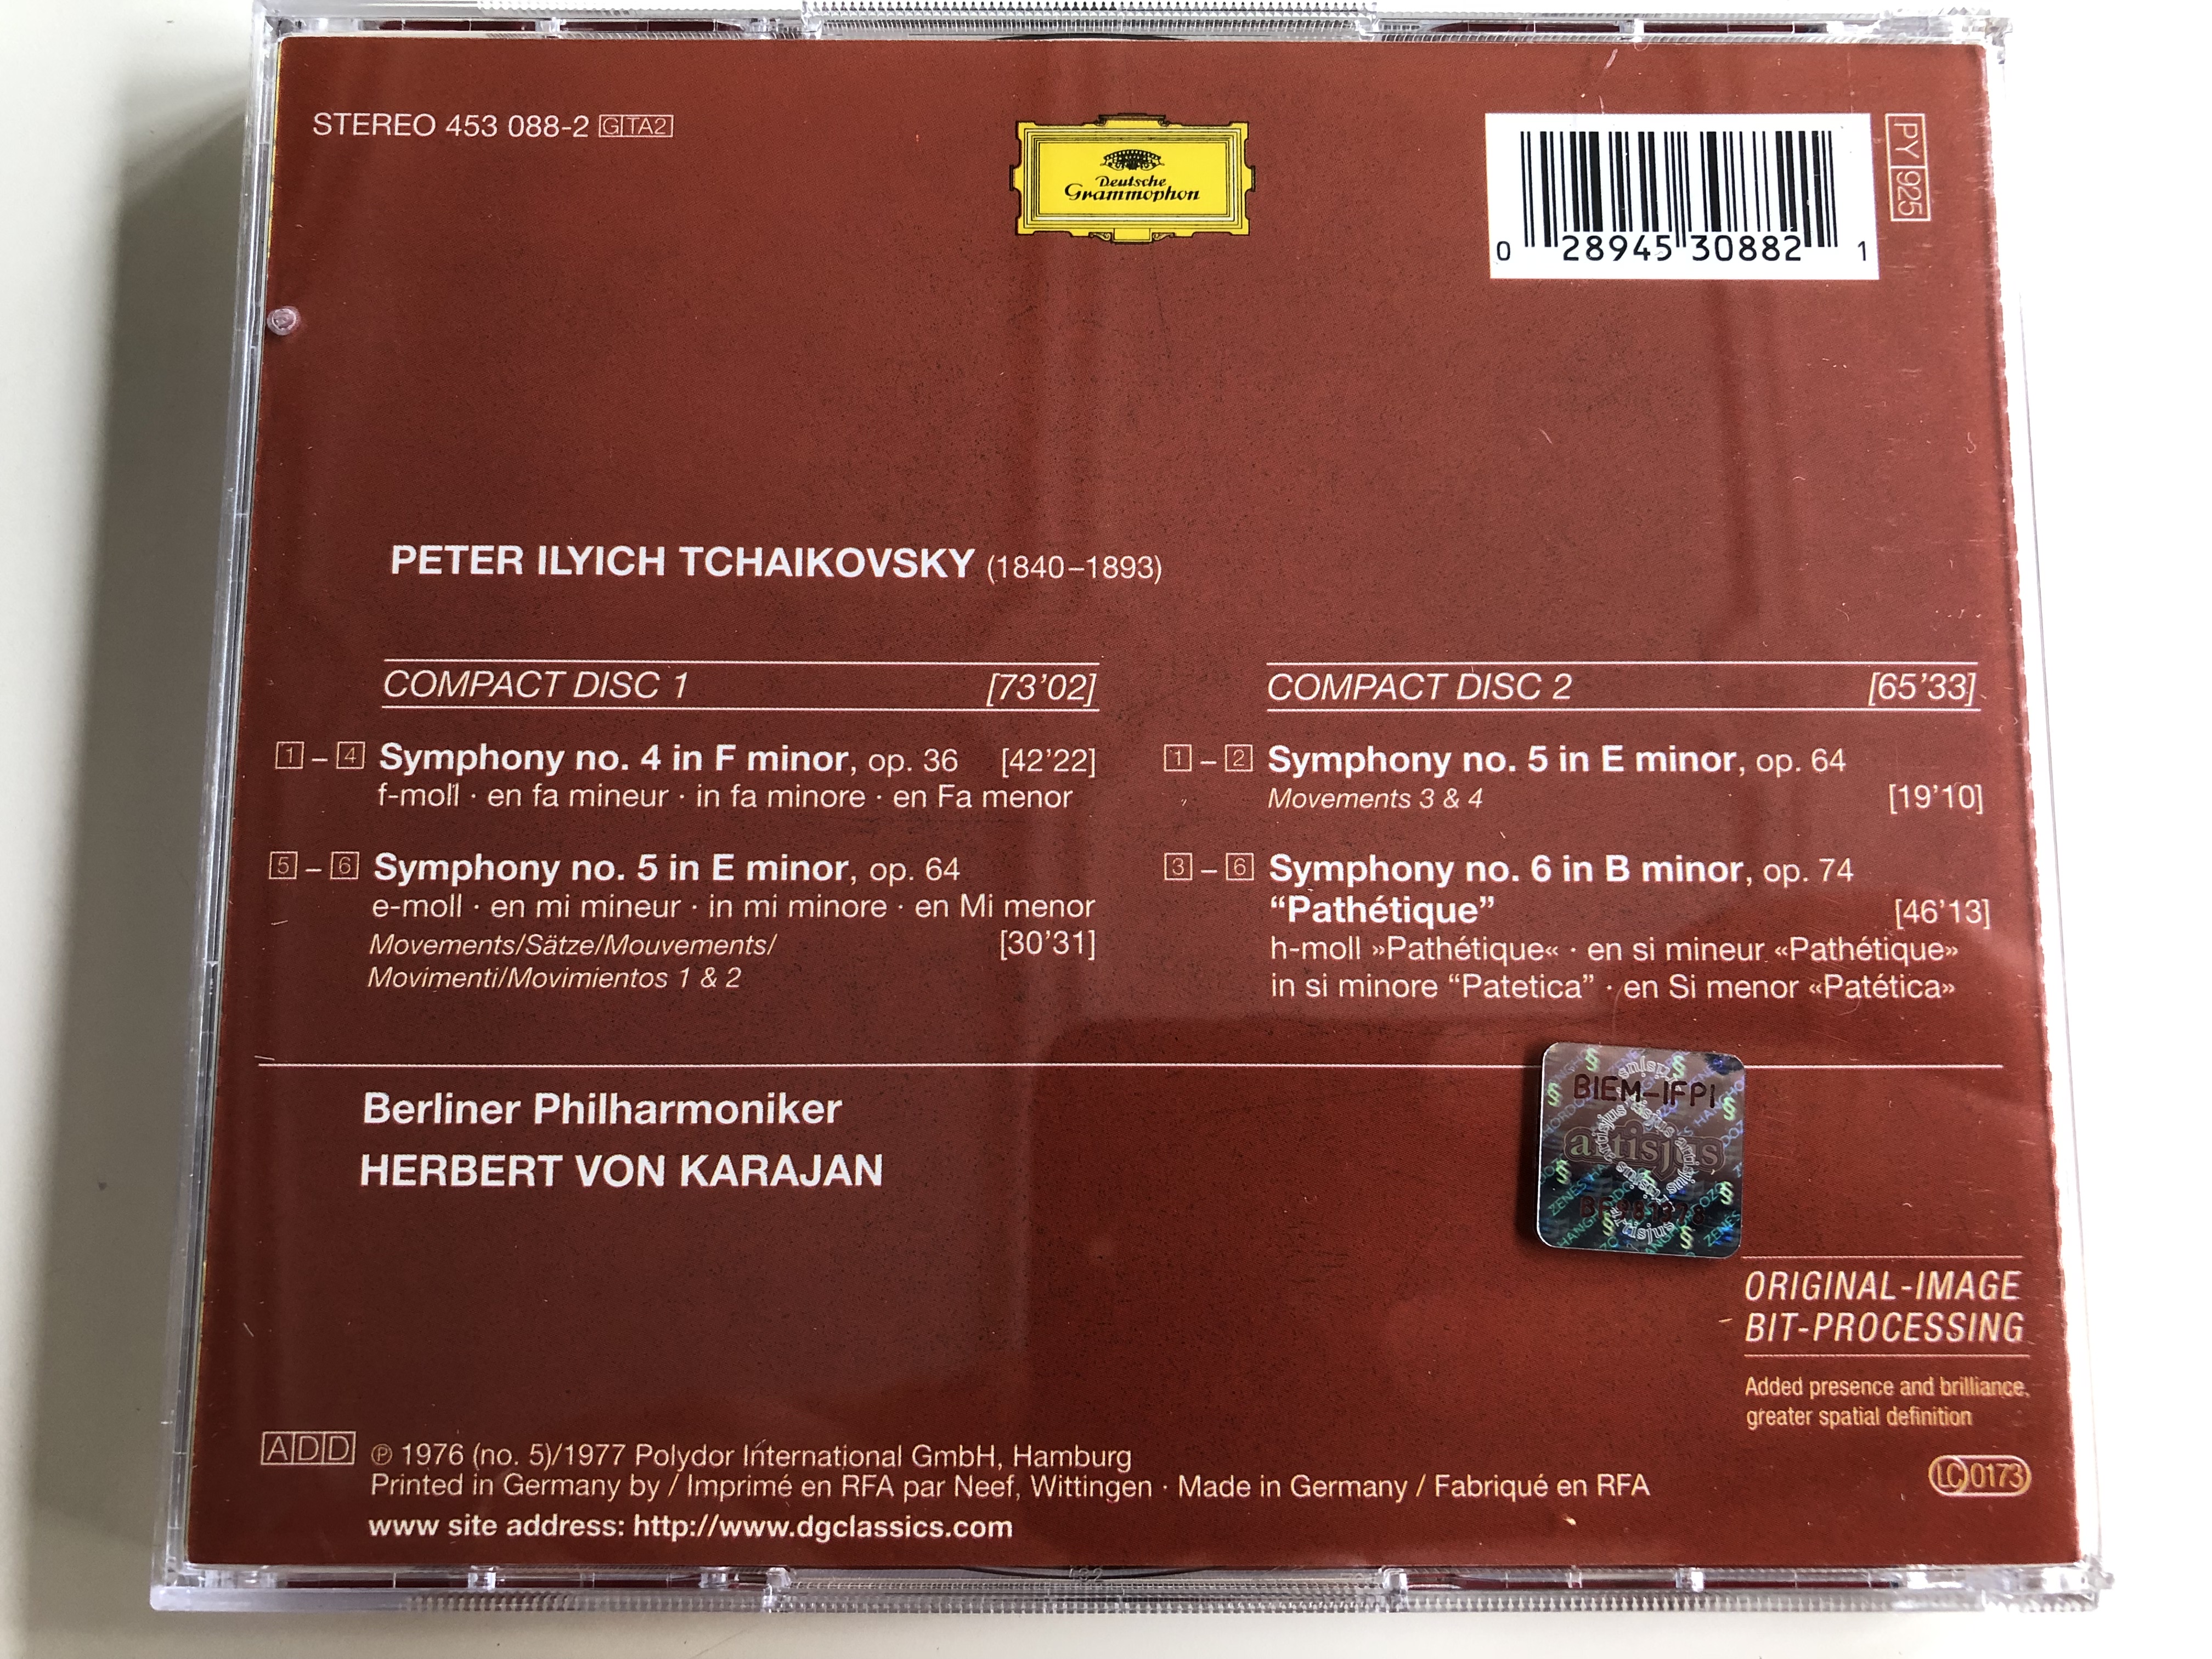 tchaikovsky-symphonies-4-5-6-path-tique-berliner-philharmoniker-conducted-by-herber-von-karajan-2-cd-audio-set-py925-5-.jpg